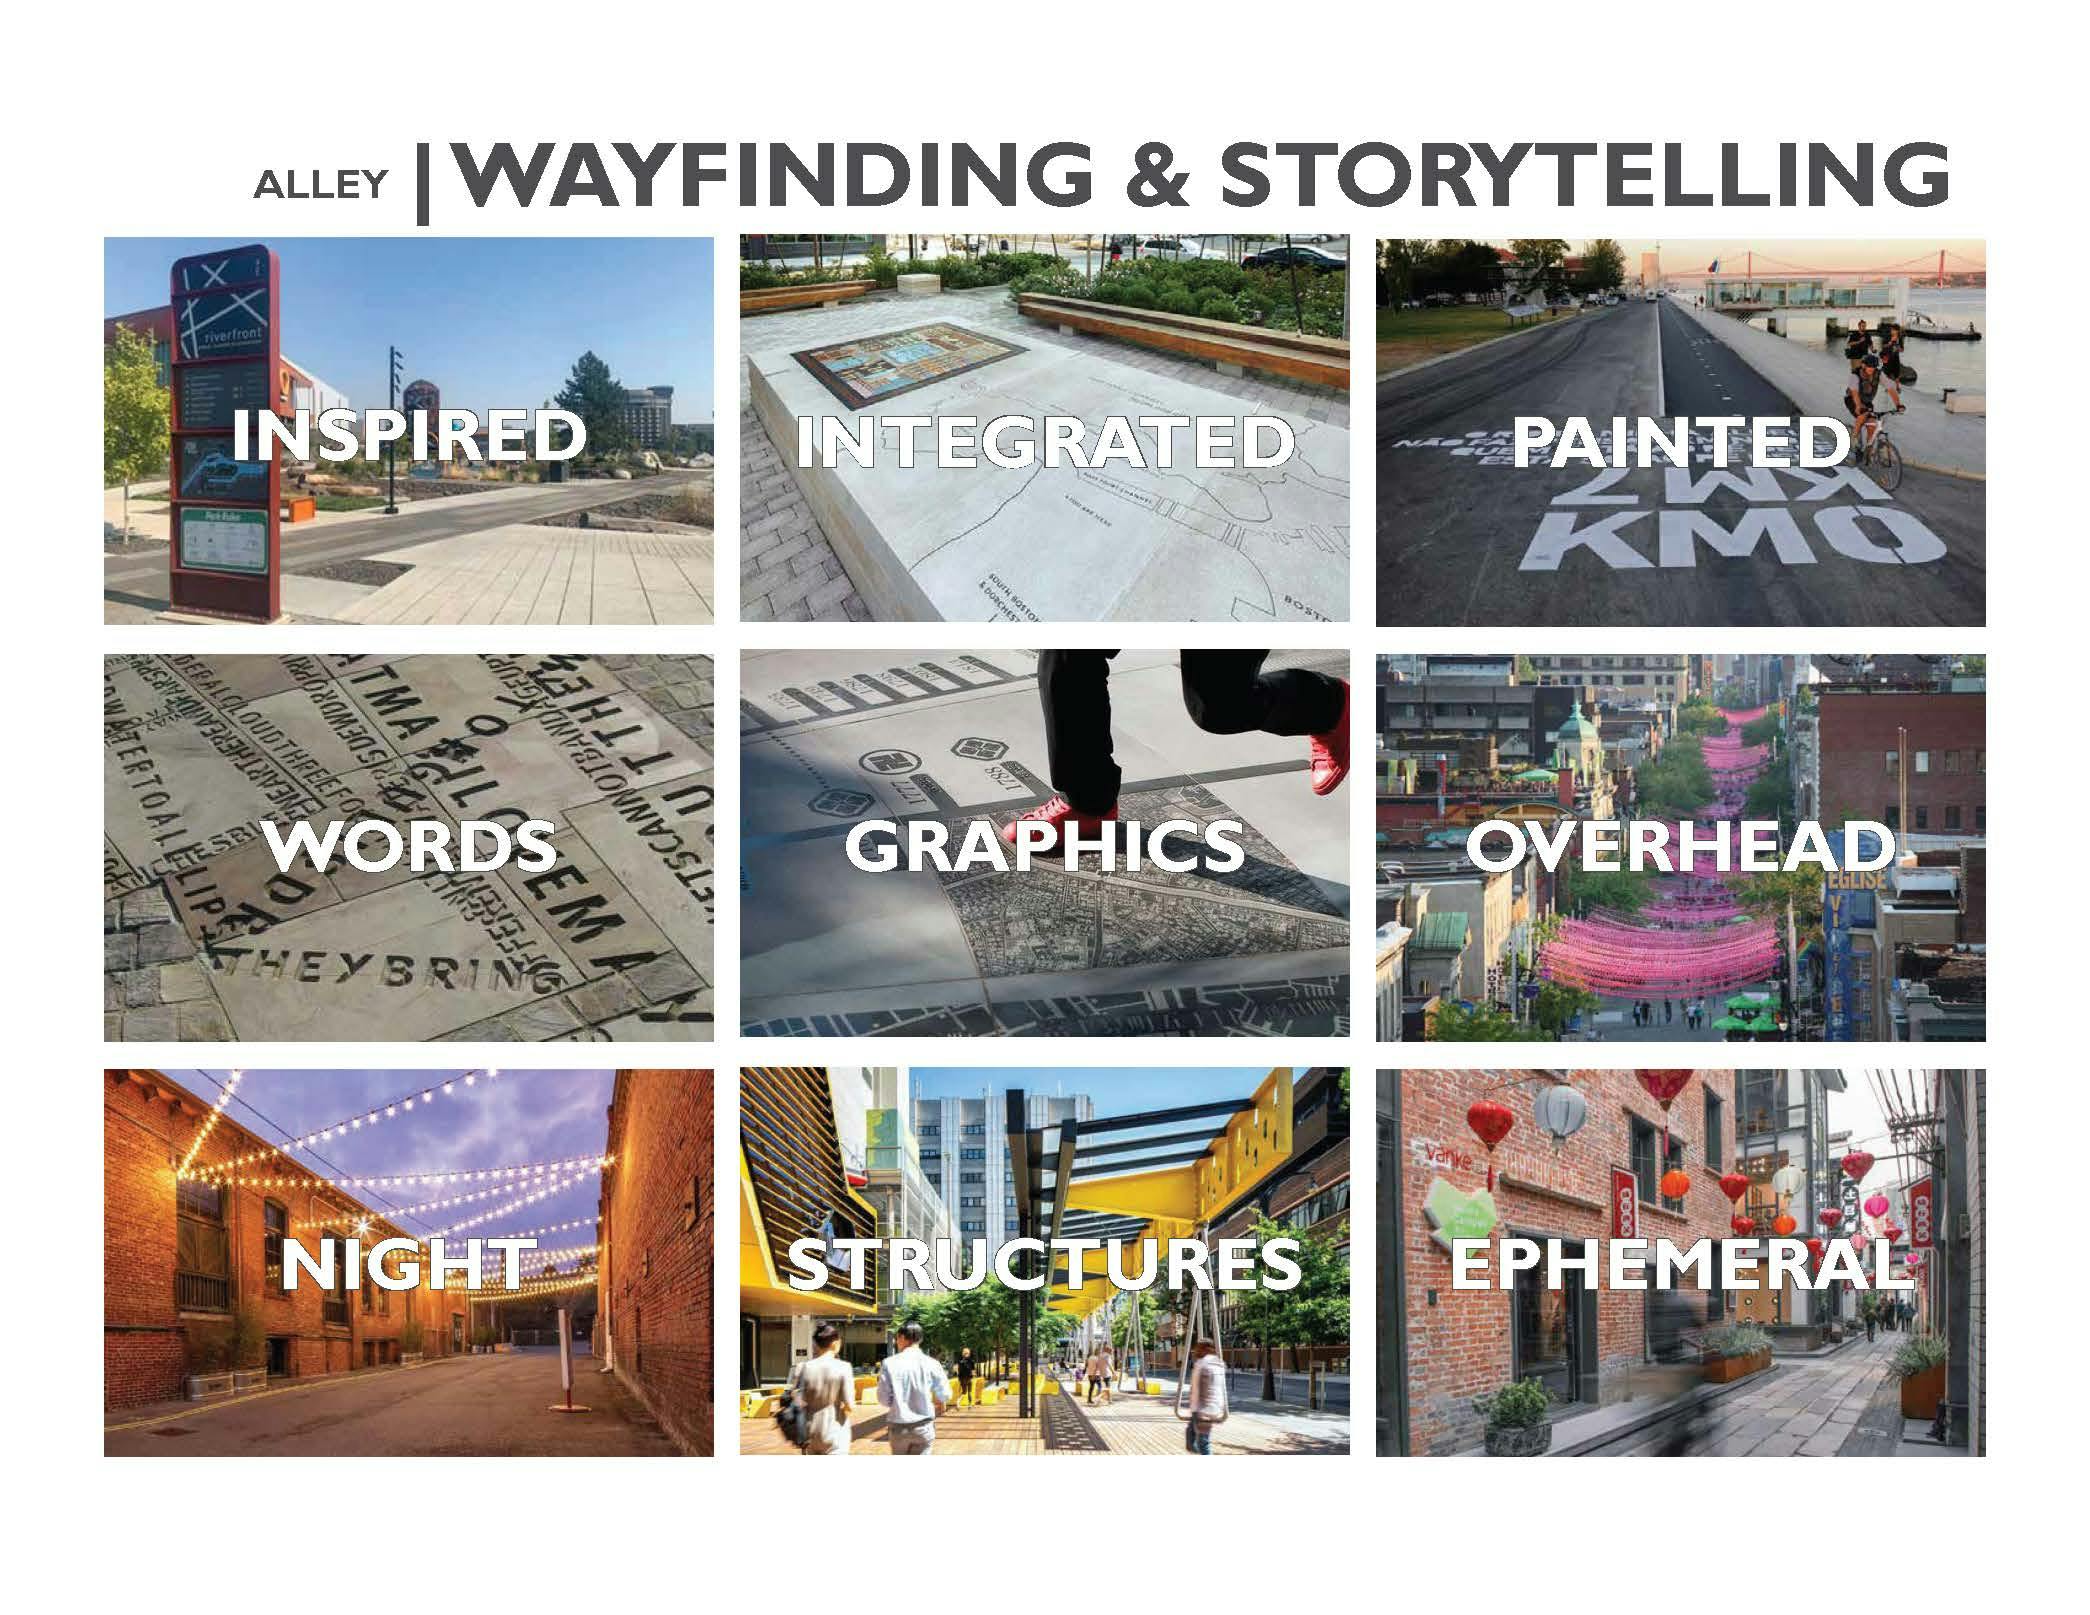 Alley_Wayfinding_Storytelling.jpg